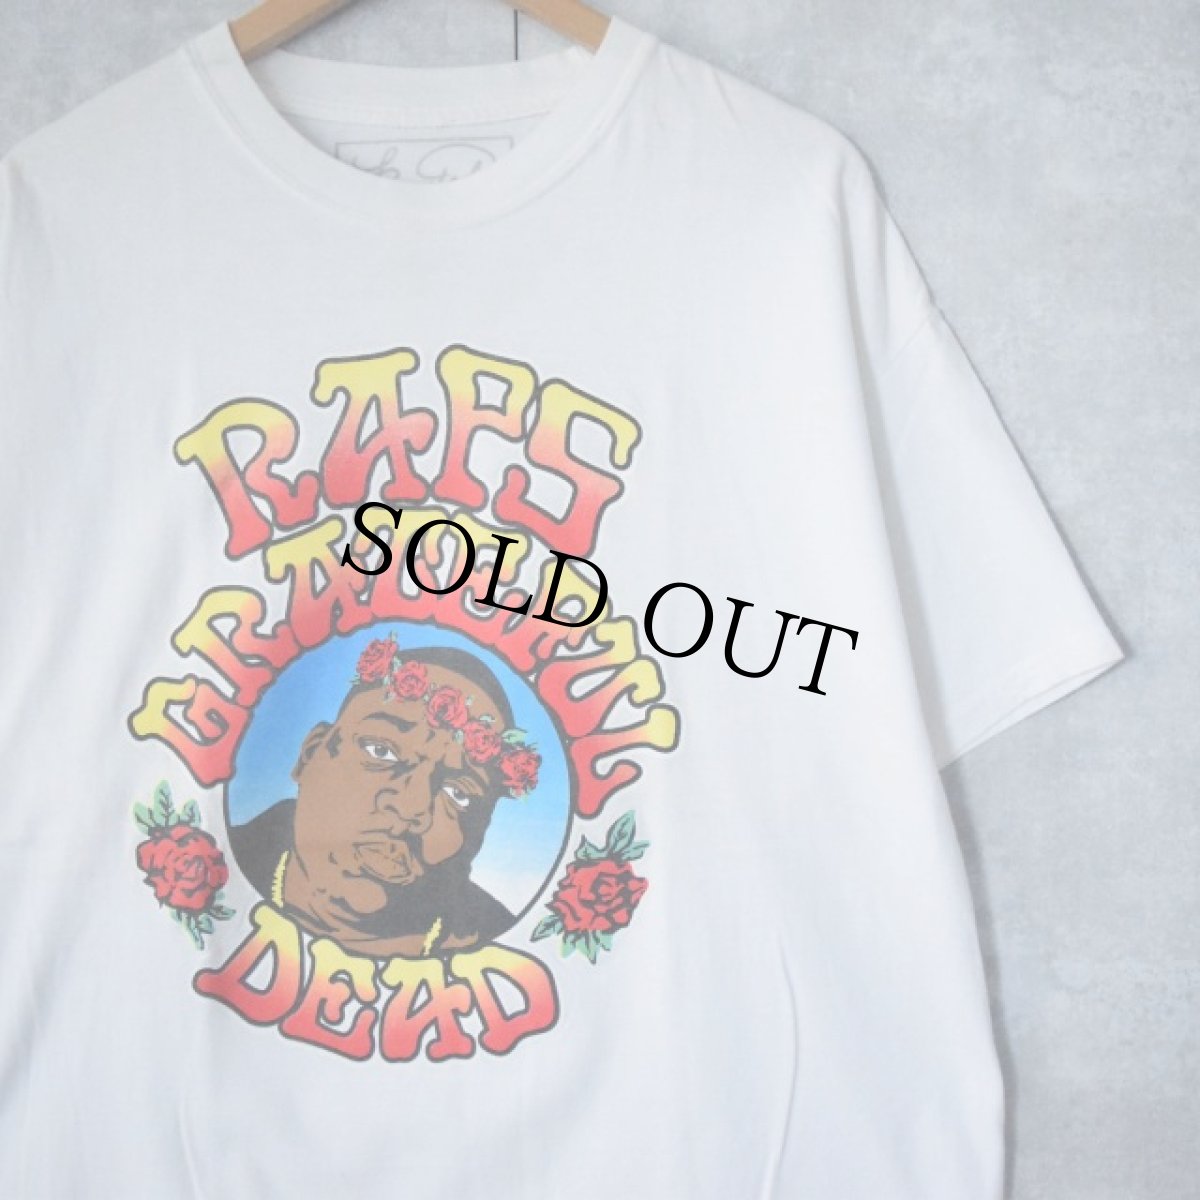 画像1: Notorious B.I.G "RAPS GRATEFUL DEAD" バンドパロディ HIPHOPTシャツ XL (1)